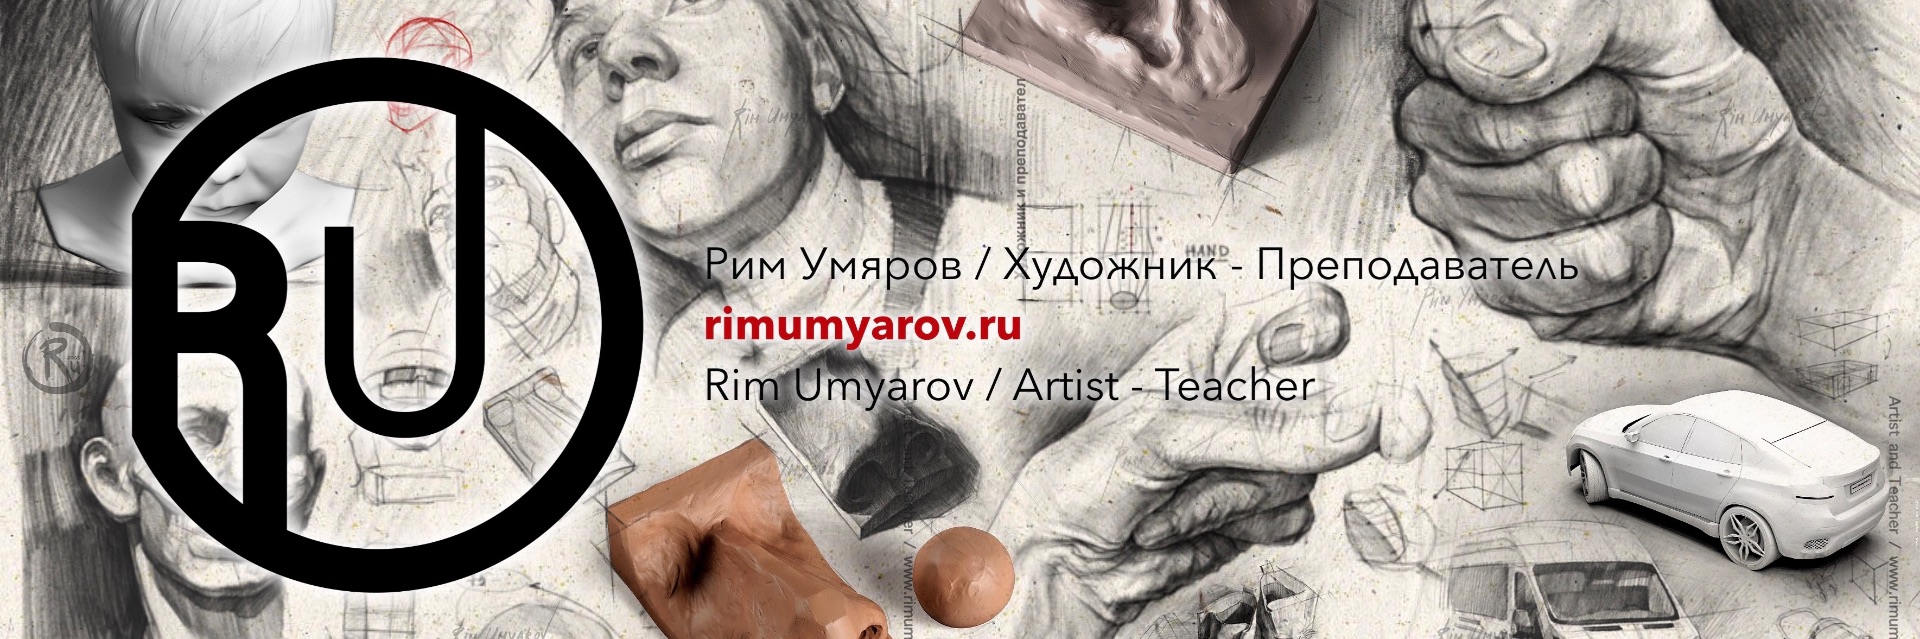 аналитический рисунок, Рим Умяров, Rim Umyarov, artist, художник, рисунок, обучение, уроки, скульптура, sculpting, drawing, tutorial